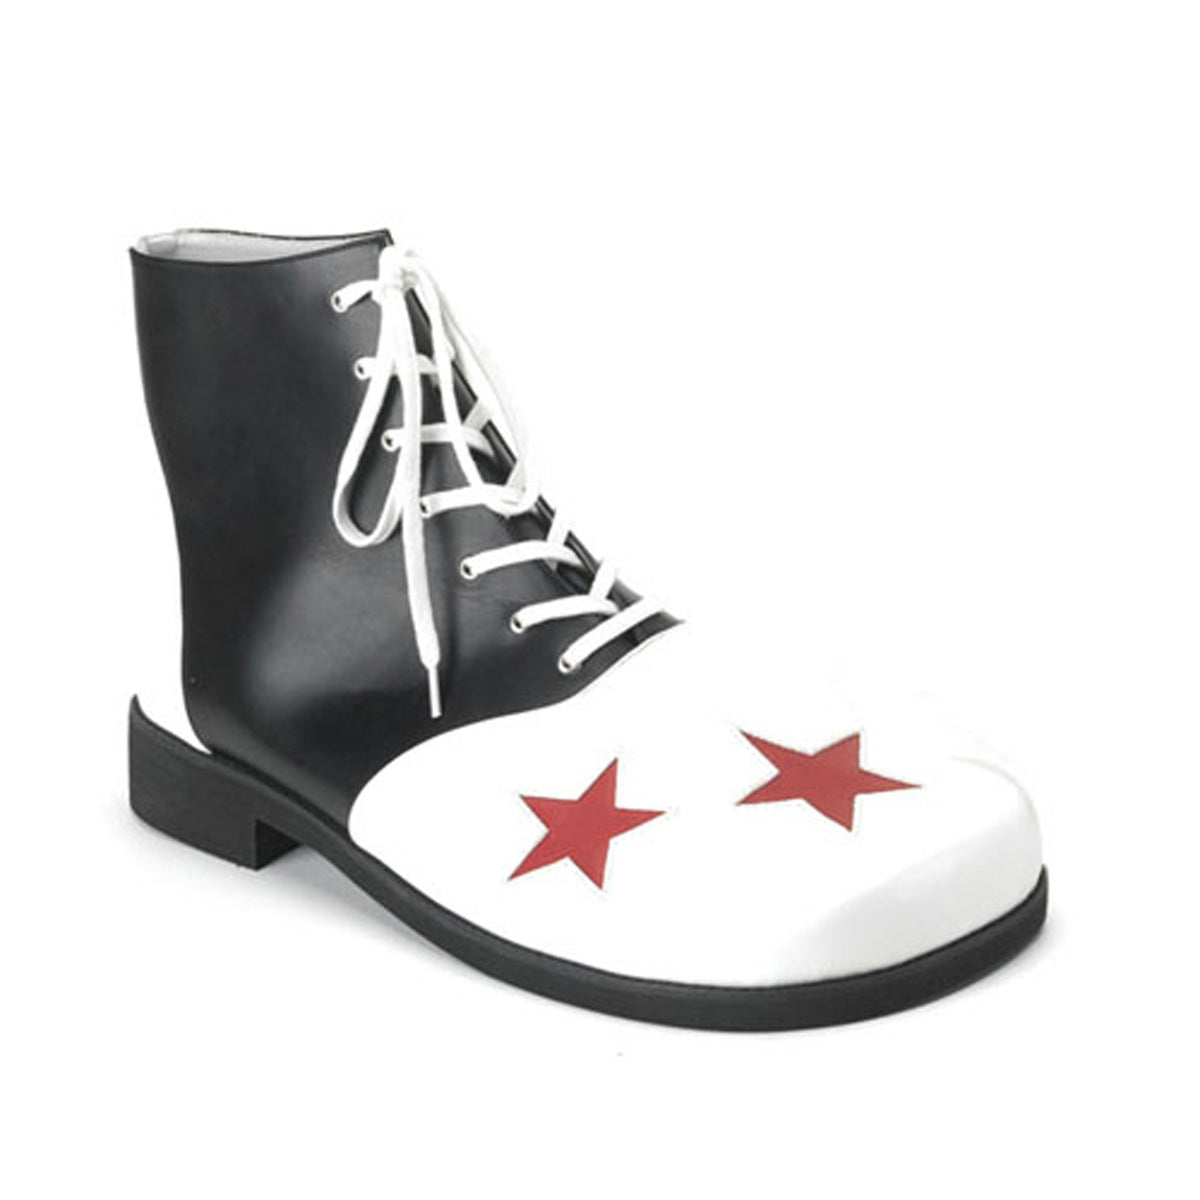 CLOWN-02 Black-White Clown Shoe